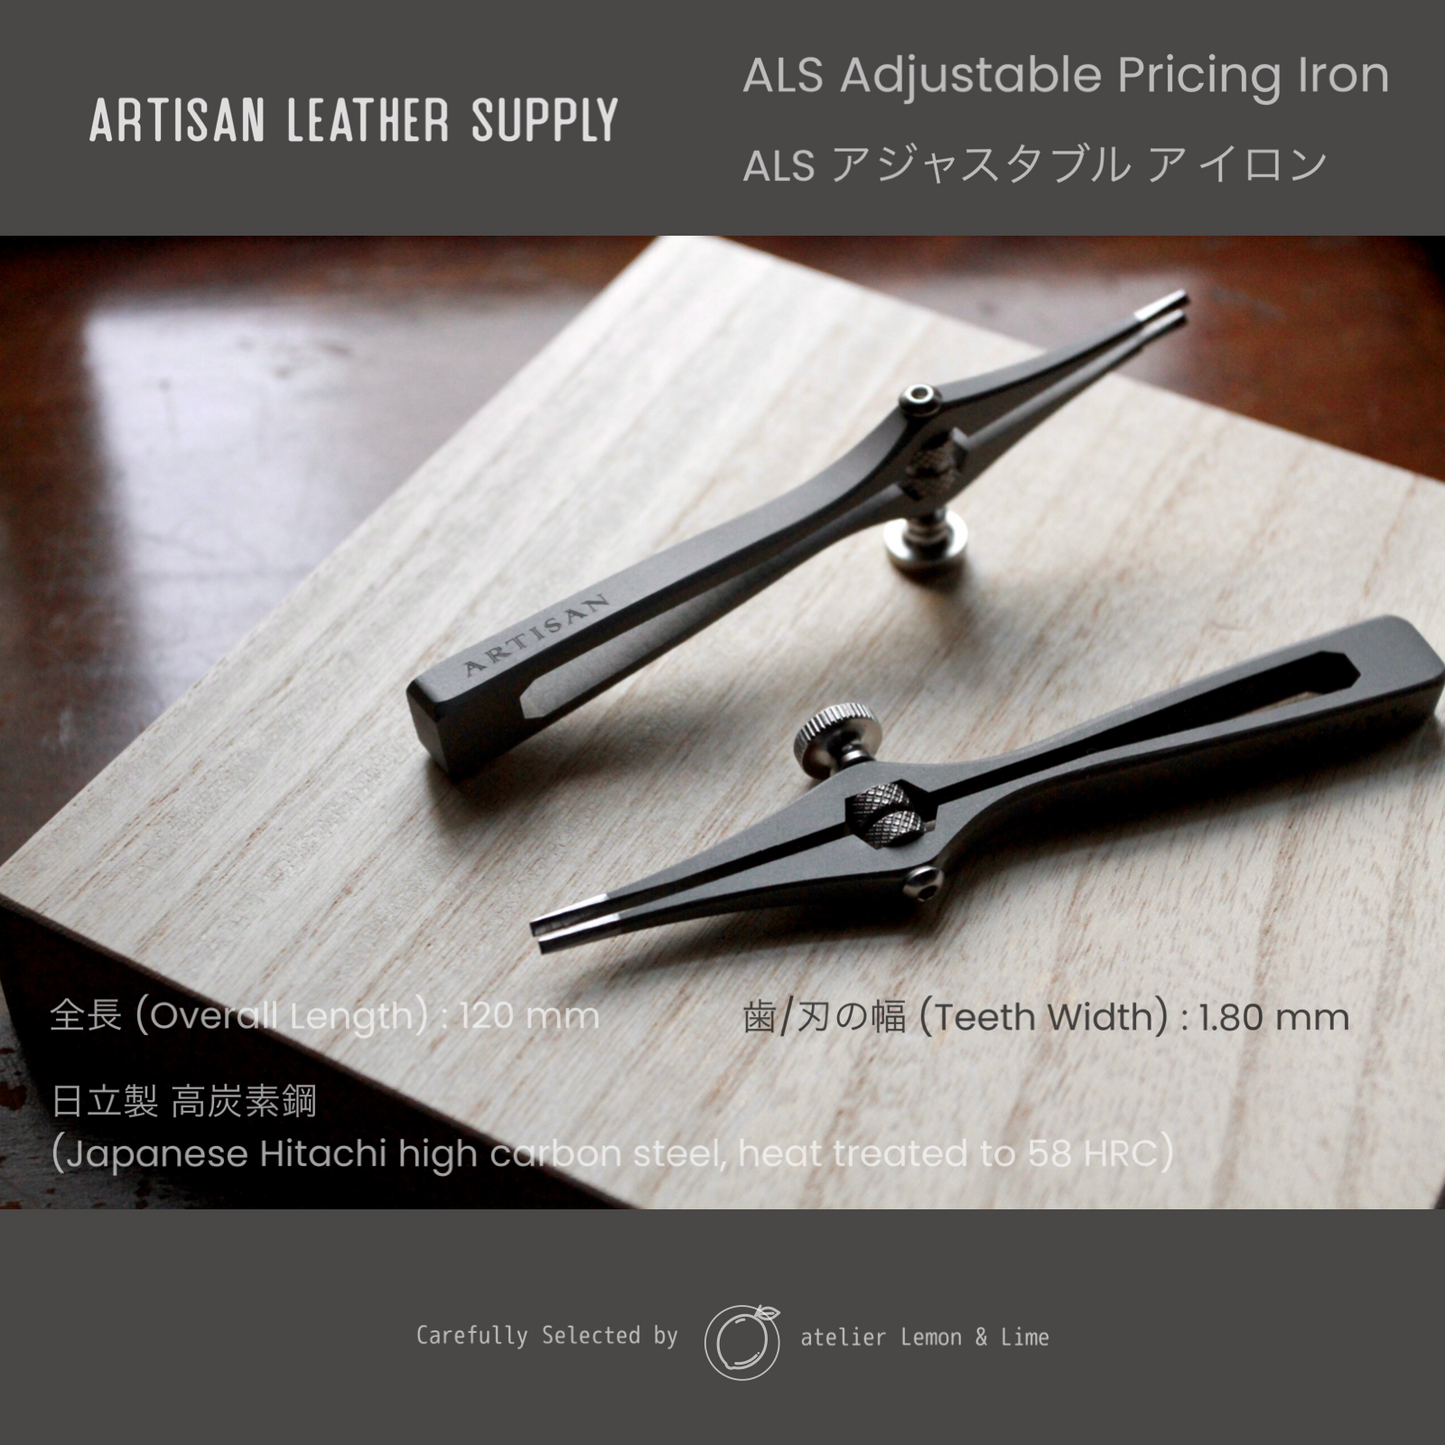 * アジャスタブルアイロン【Artisan Leather Supply】Adjustable Iron